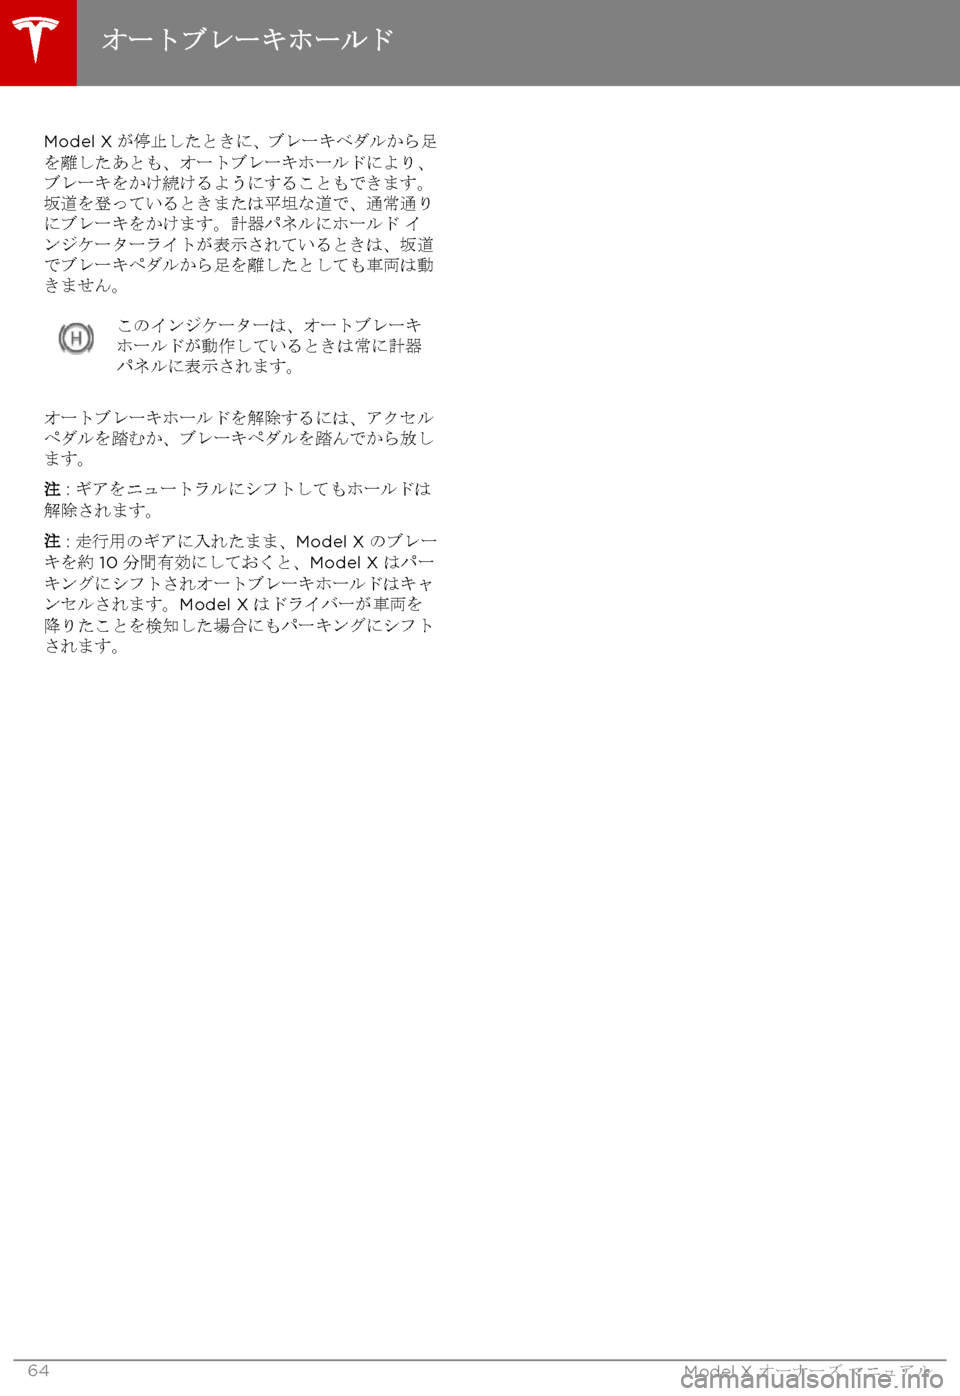 TESLA MODEL X 2017  取扱説明書 (in Japanese) Model X@